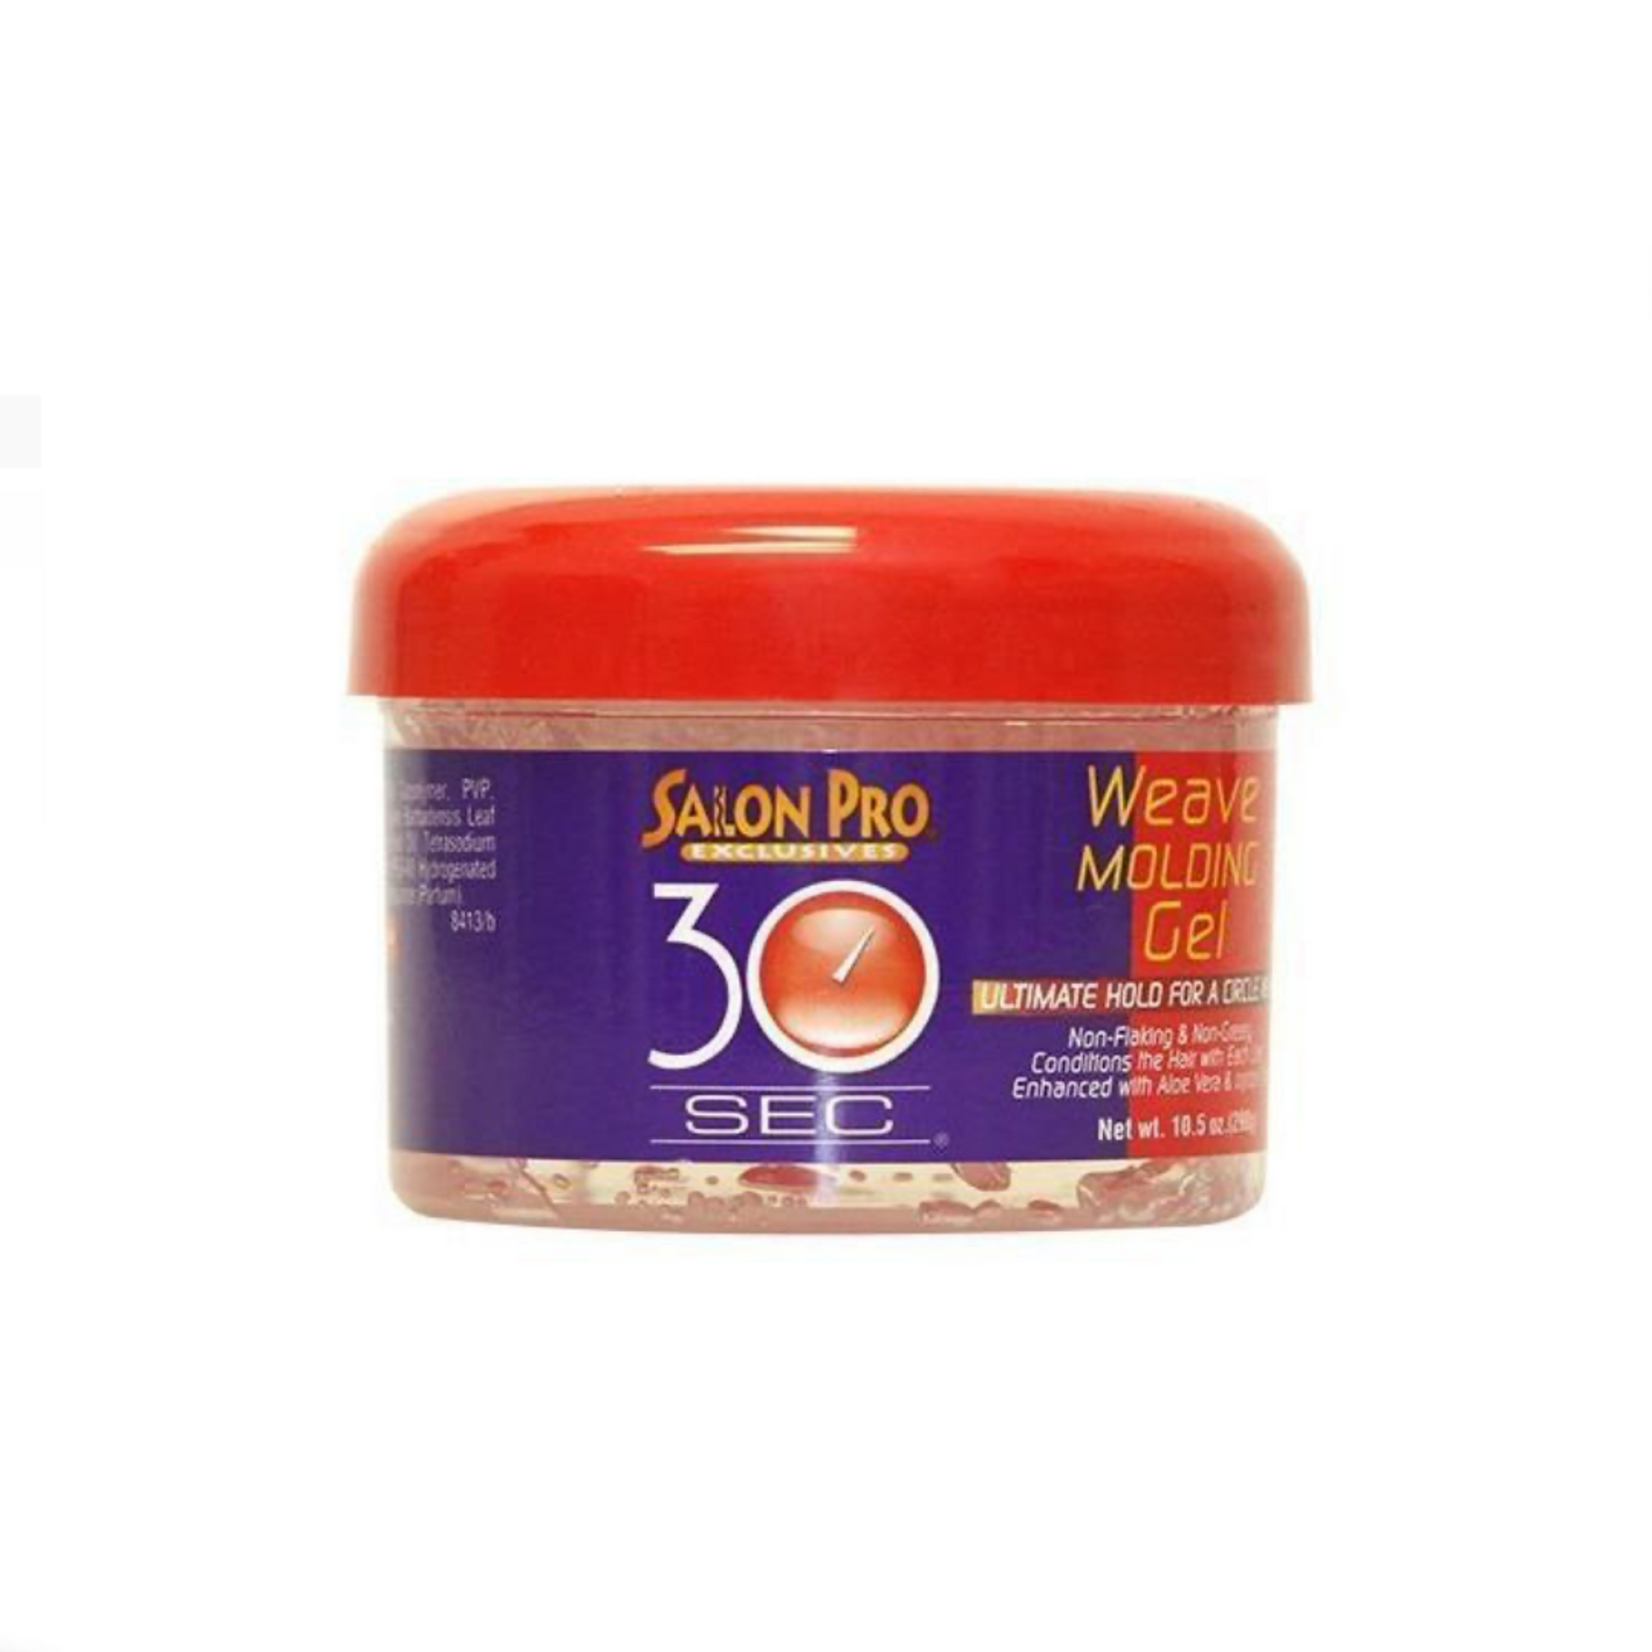 SALON PRO 30 SEC WEAVE MOLDING GEL 10.5oz-Salon Pro Exclusives- Hive Beauty Supply